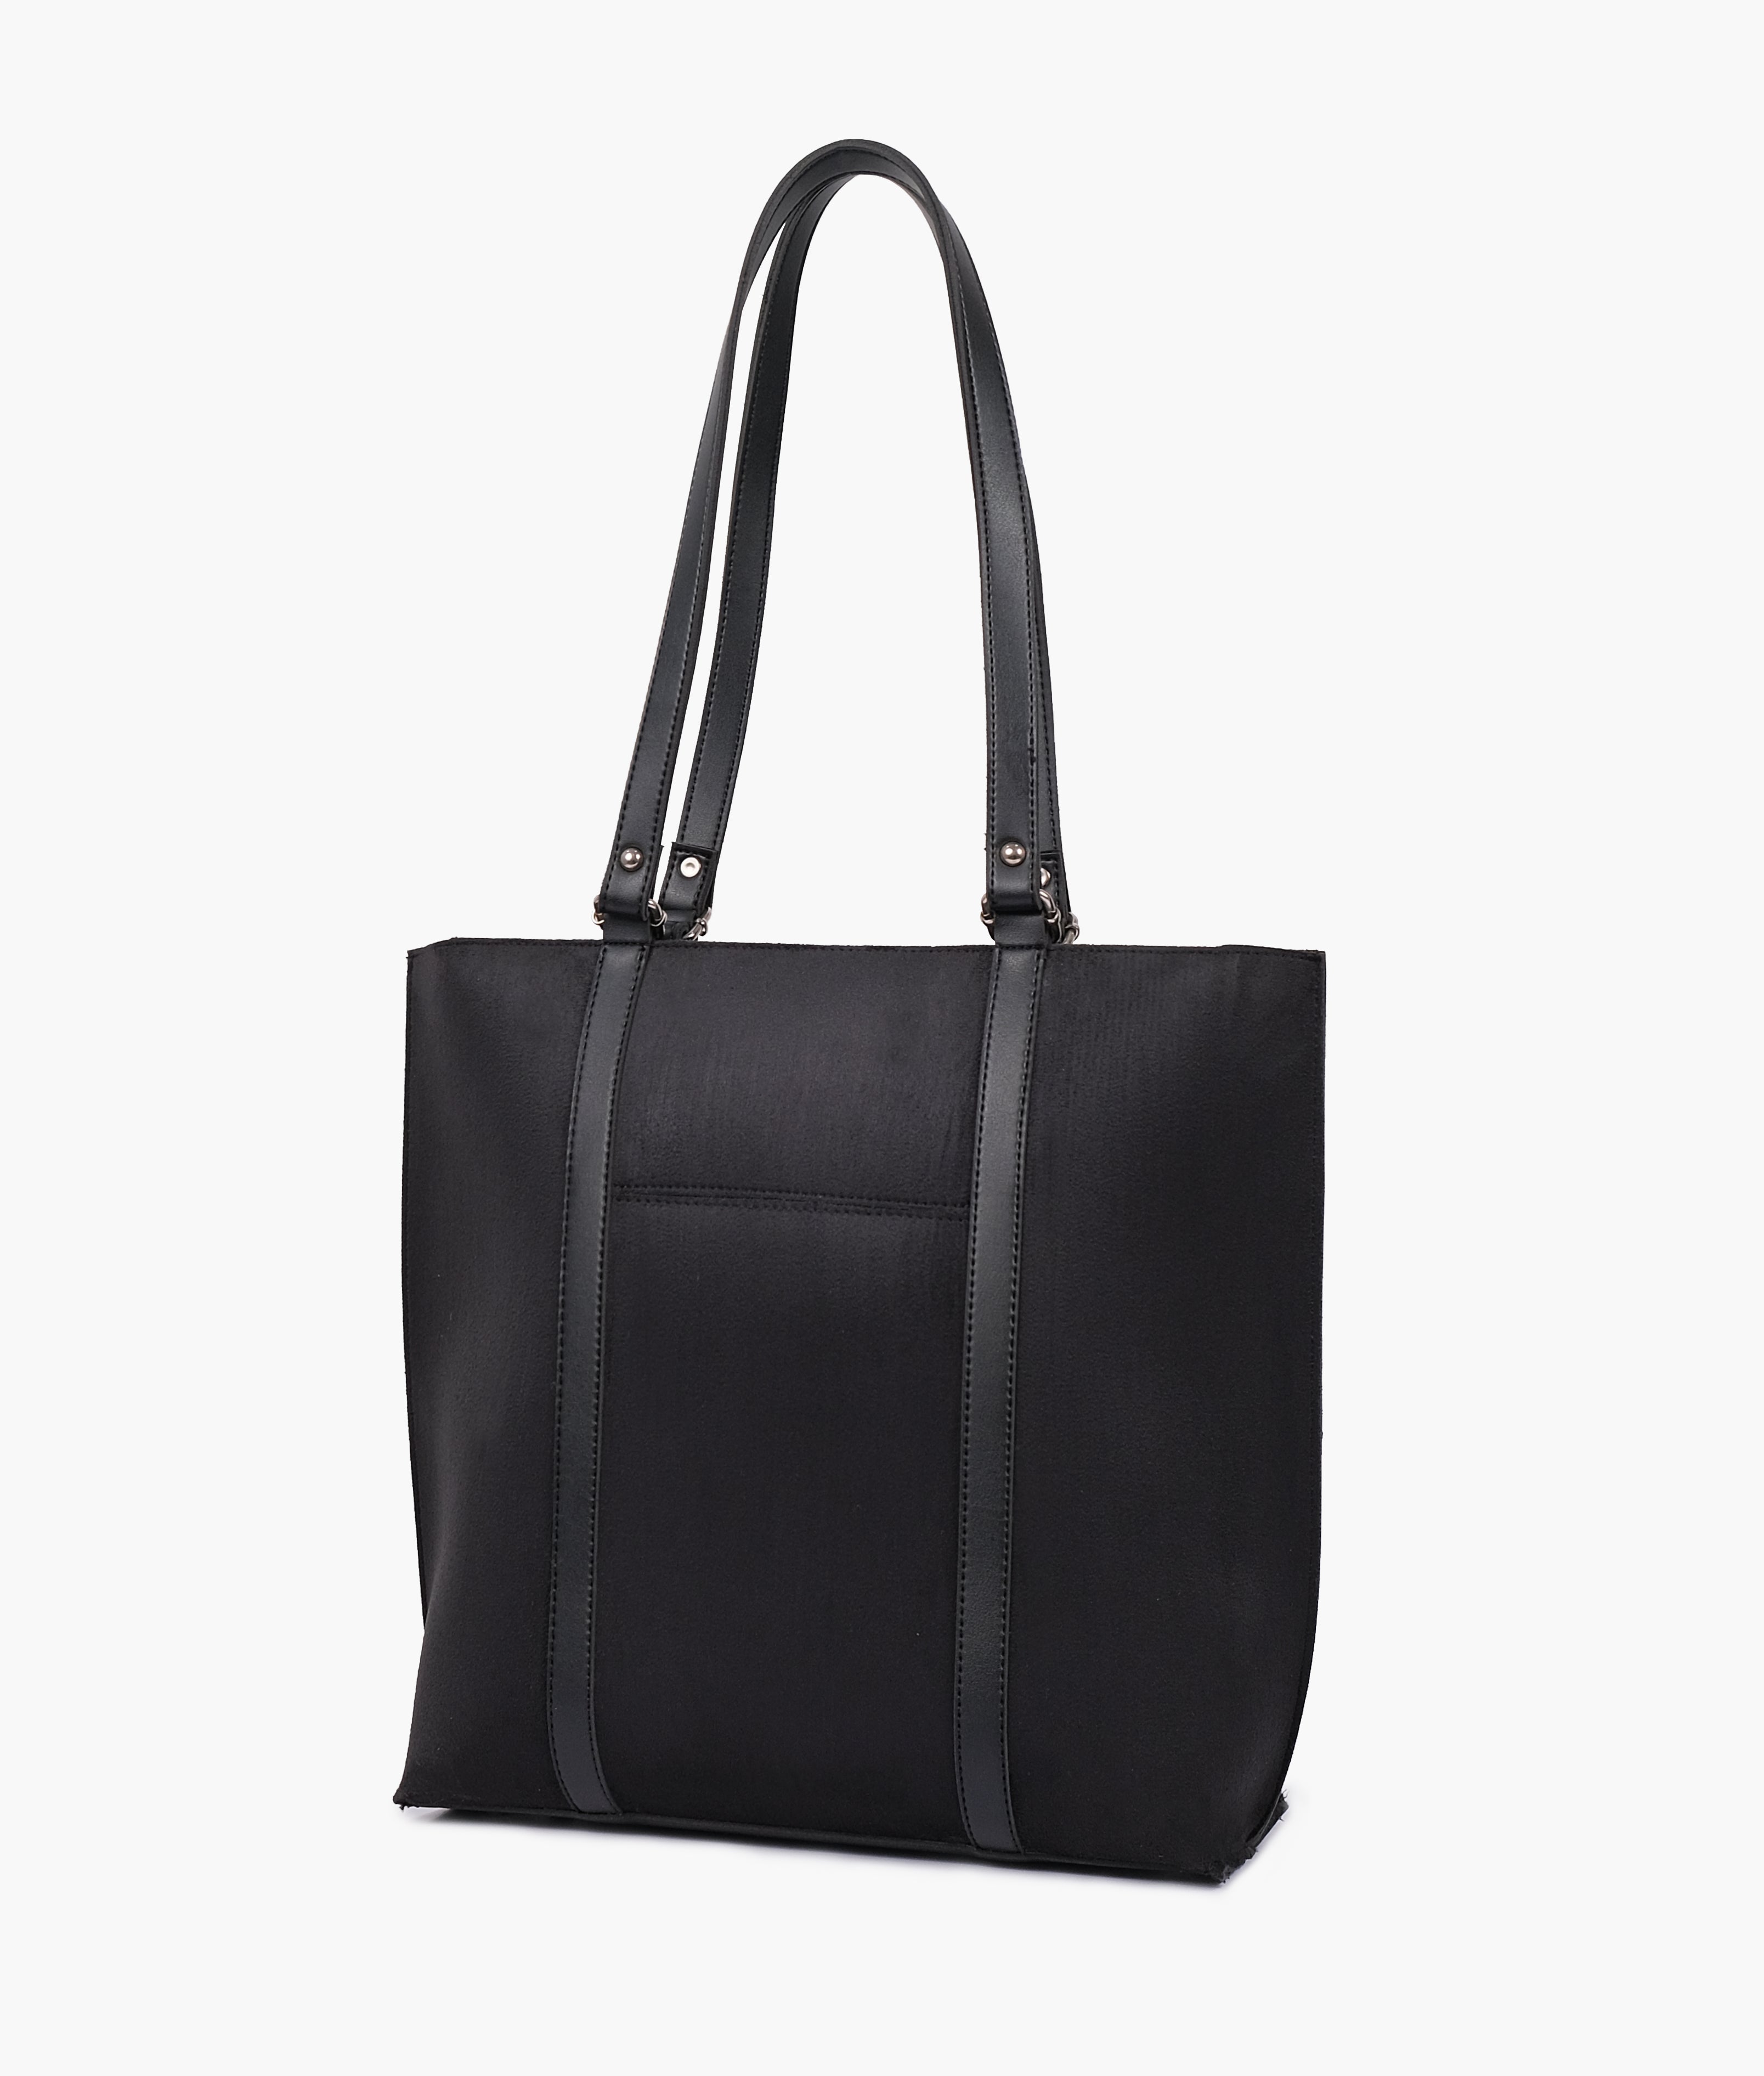 Black suede double-handle tote bag